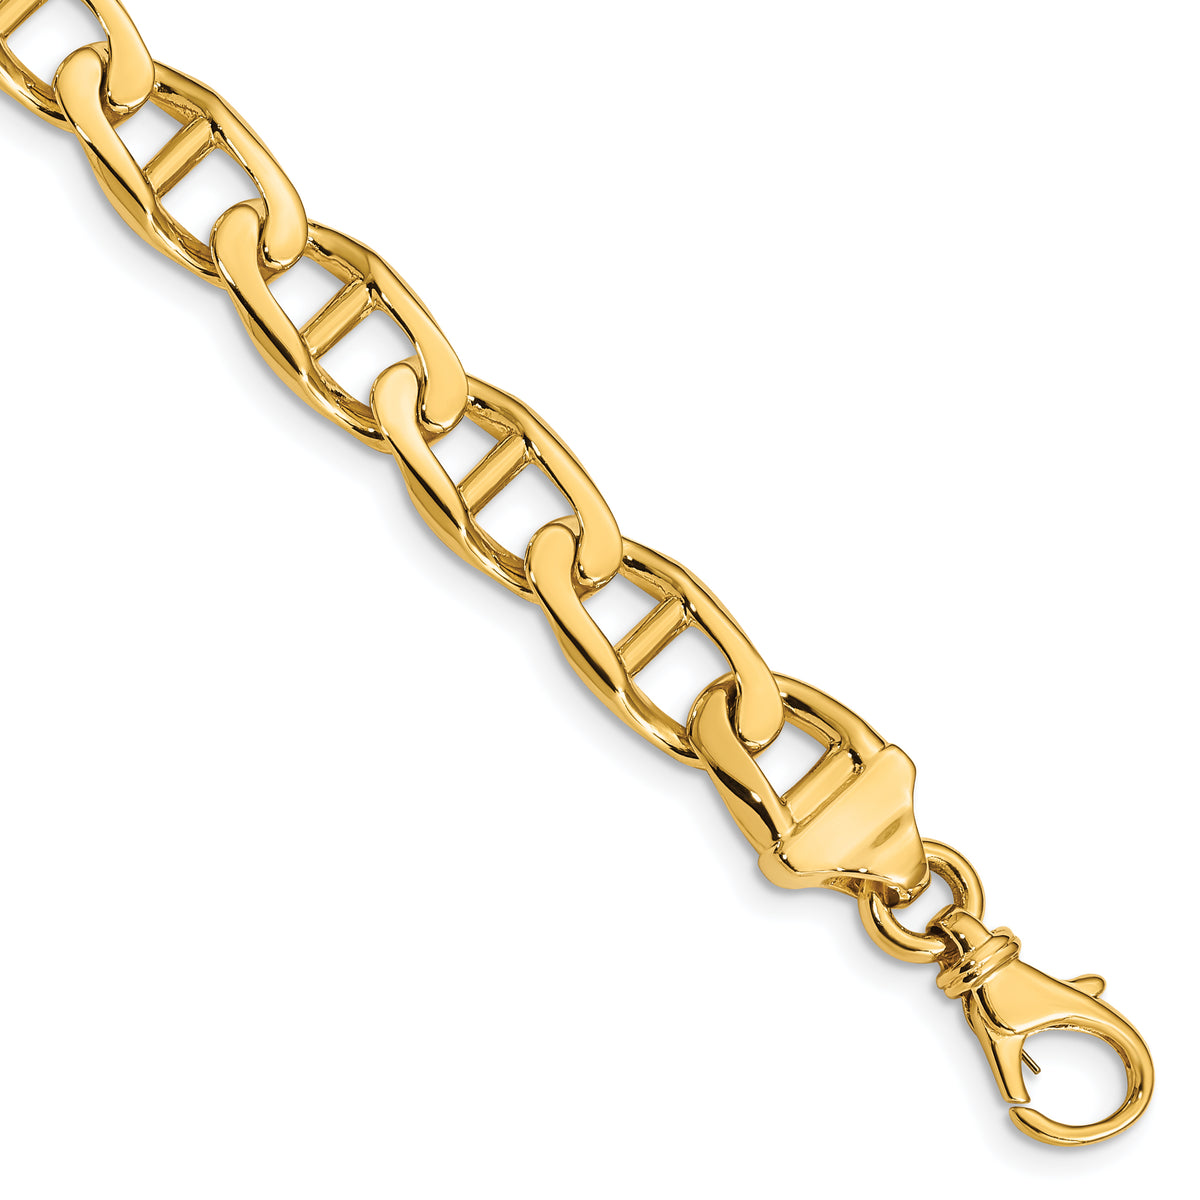 10k 8.5mm Hand-Polished Anchor Link Bracelet